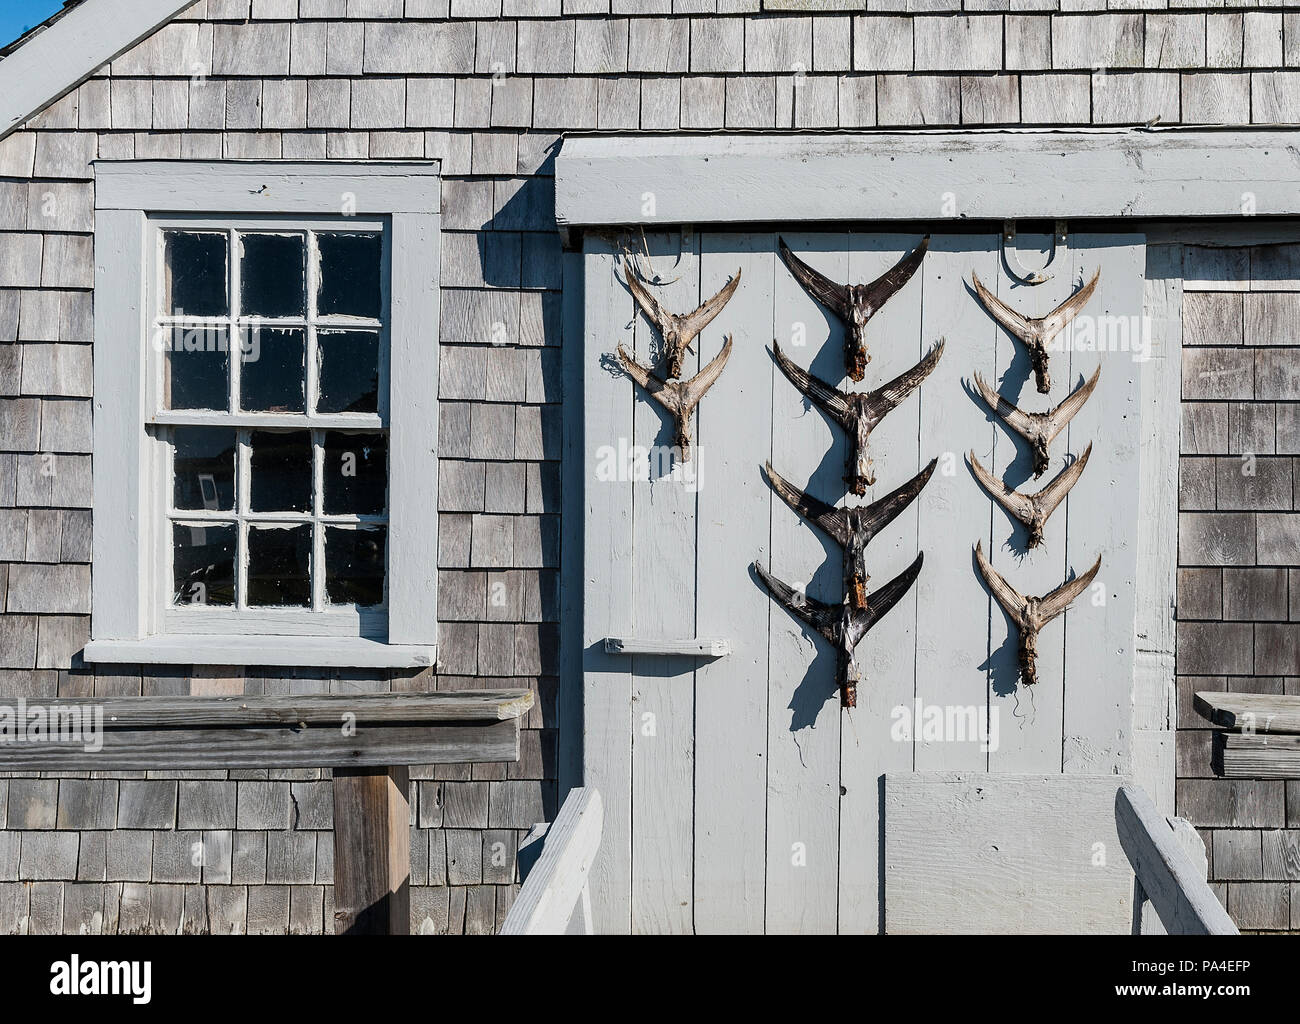 Capanna rustica con coda di pesce dispay sullo sportello, Chatham, Cape Cod, Massachusetts, STATI UNITI D'AMERICA Foto Stock